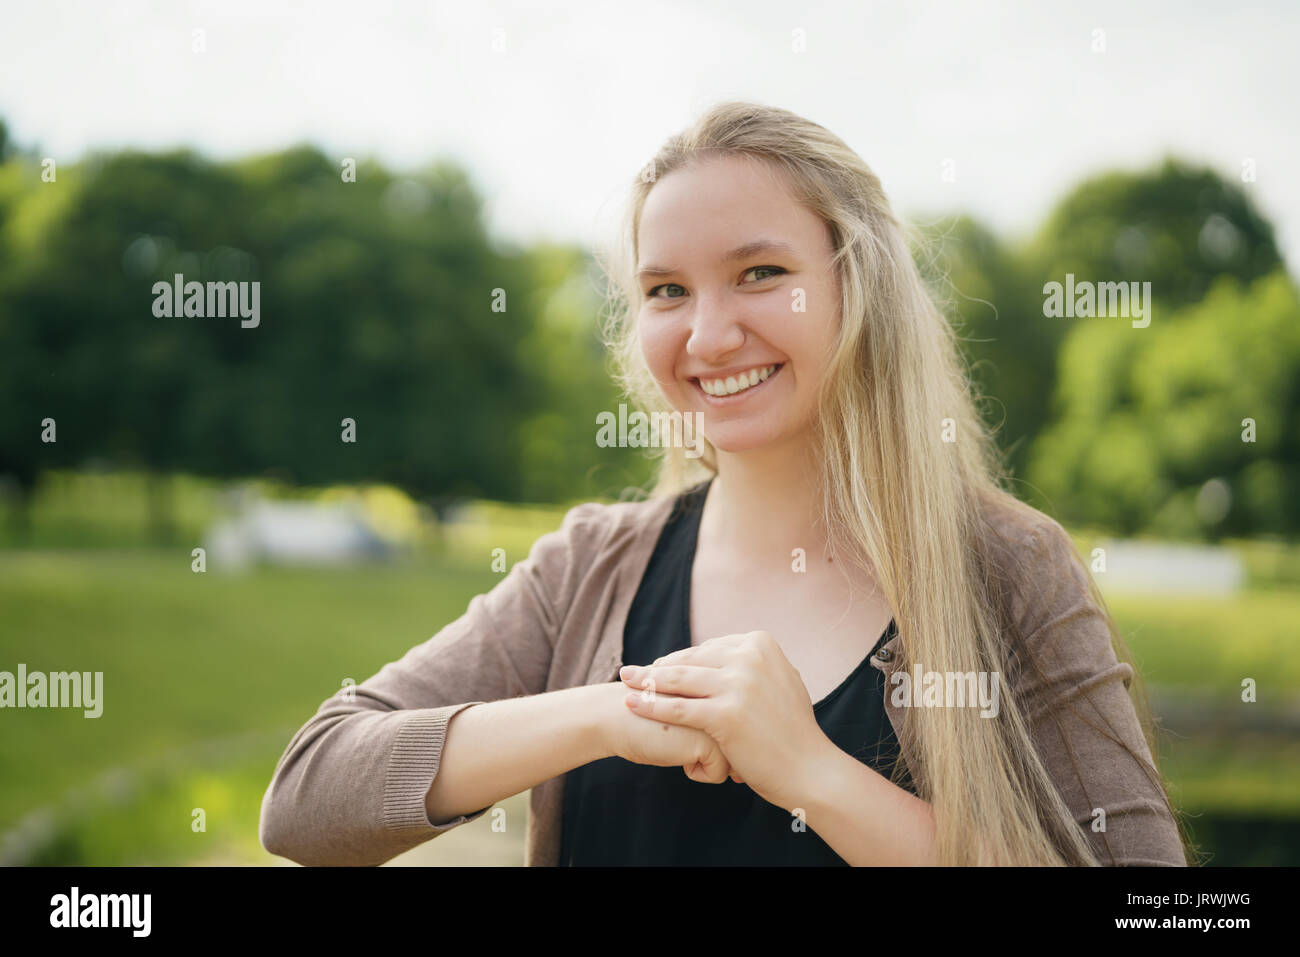 Teen ragazza sorridente nel parco verde nella soleggiata giornata estiva Foto Stock